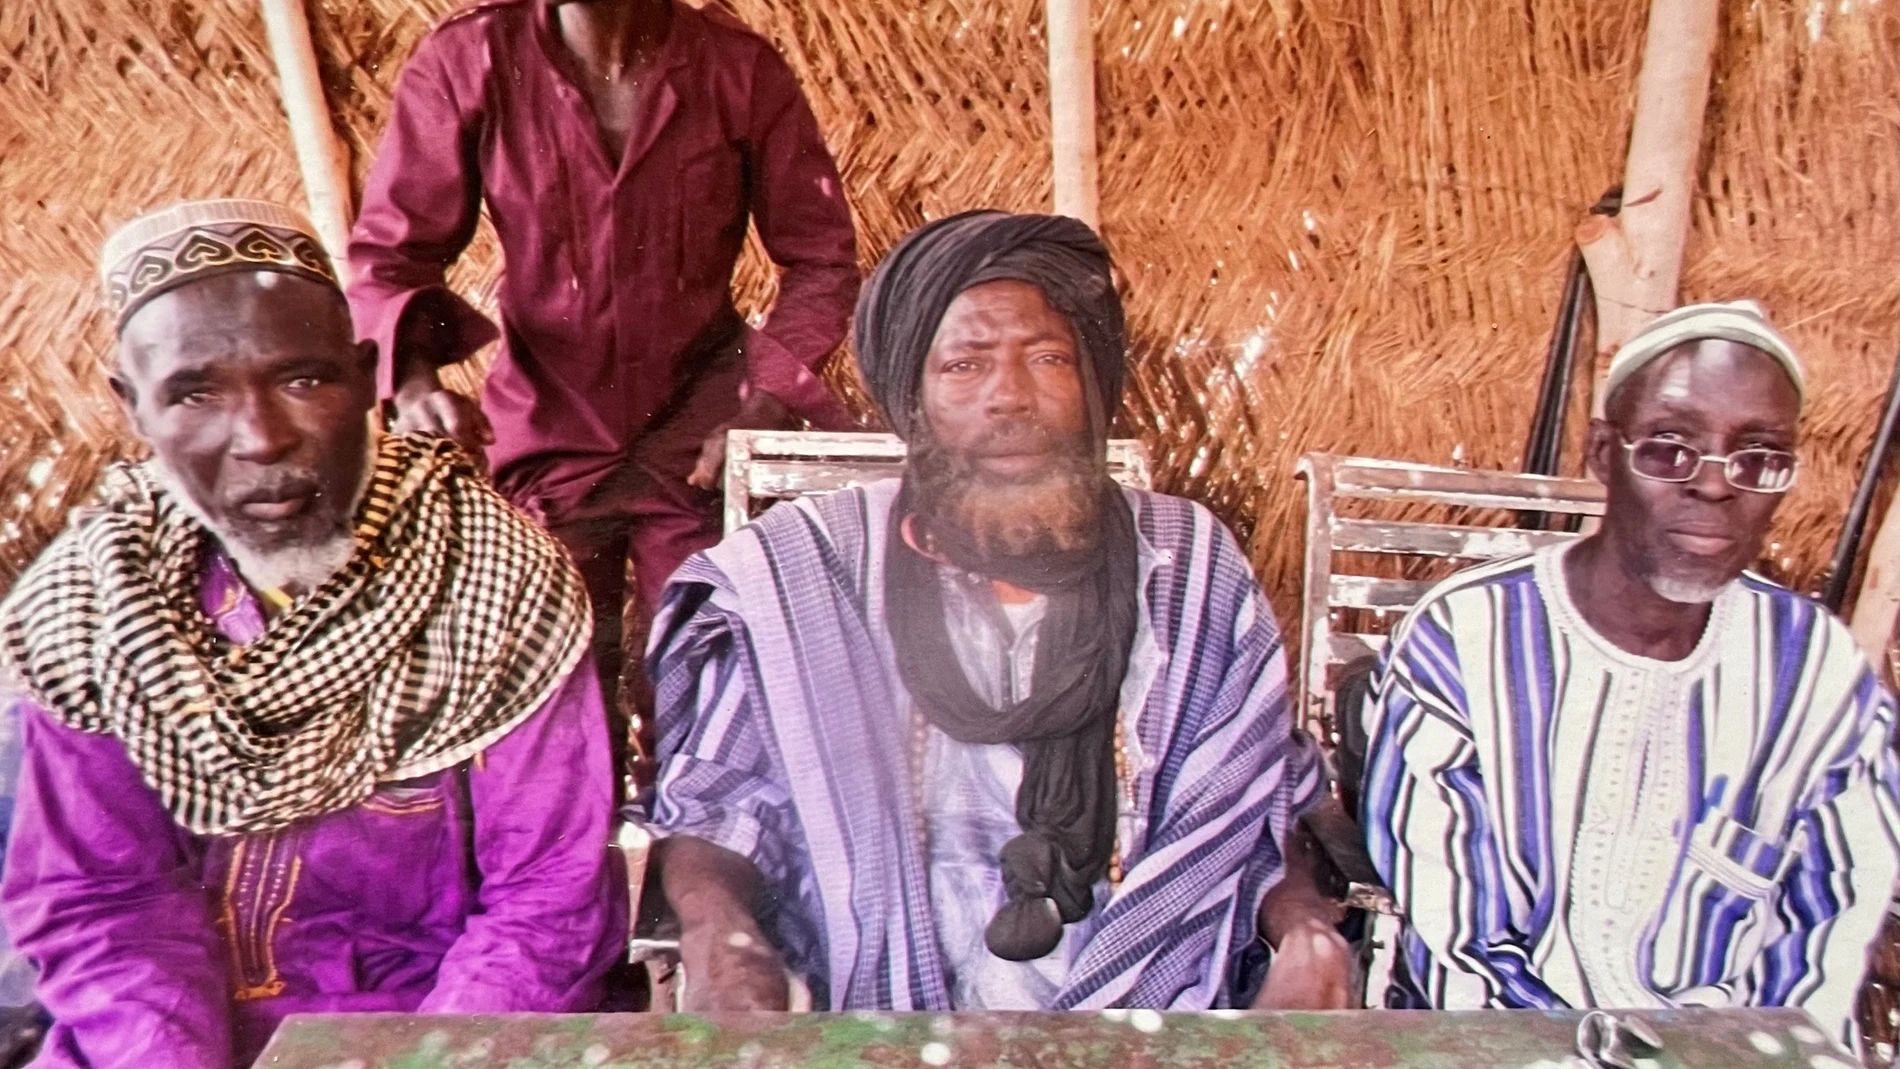 Soumaïla Ouédraogo, también conocido como Ben Laden, junto con otros líderes nacionales